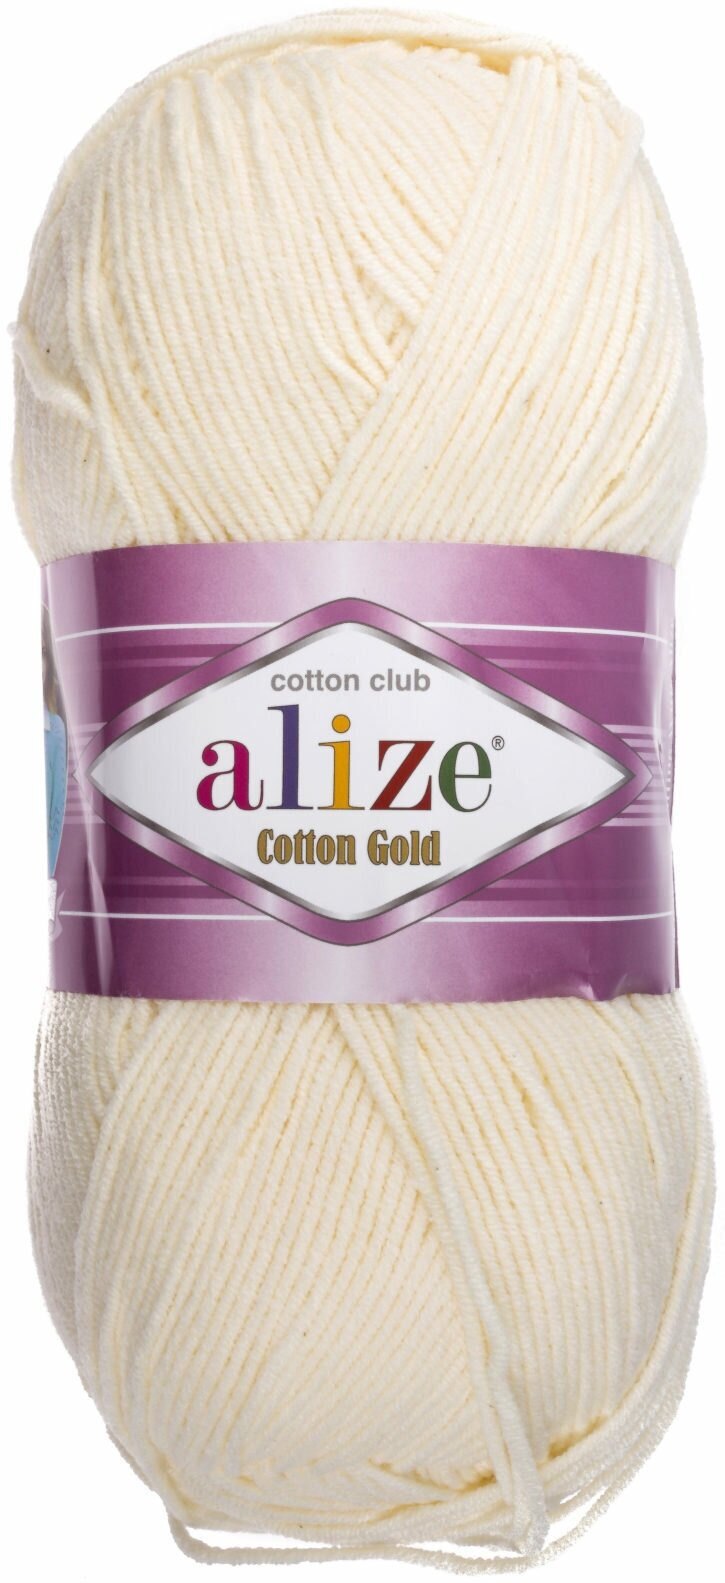 Пряжа Alize Cotton Gold молочный (0001), 55%хлопок/45%акрил, 330м, 100г, 1шт